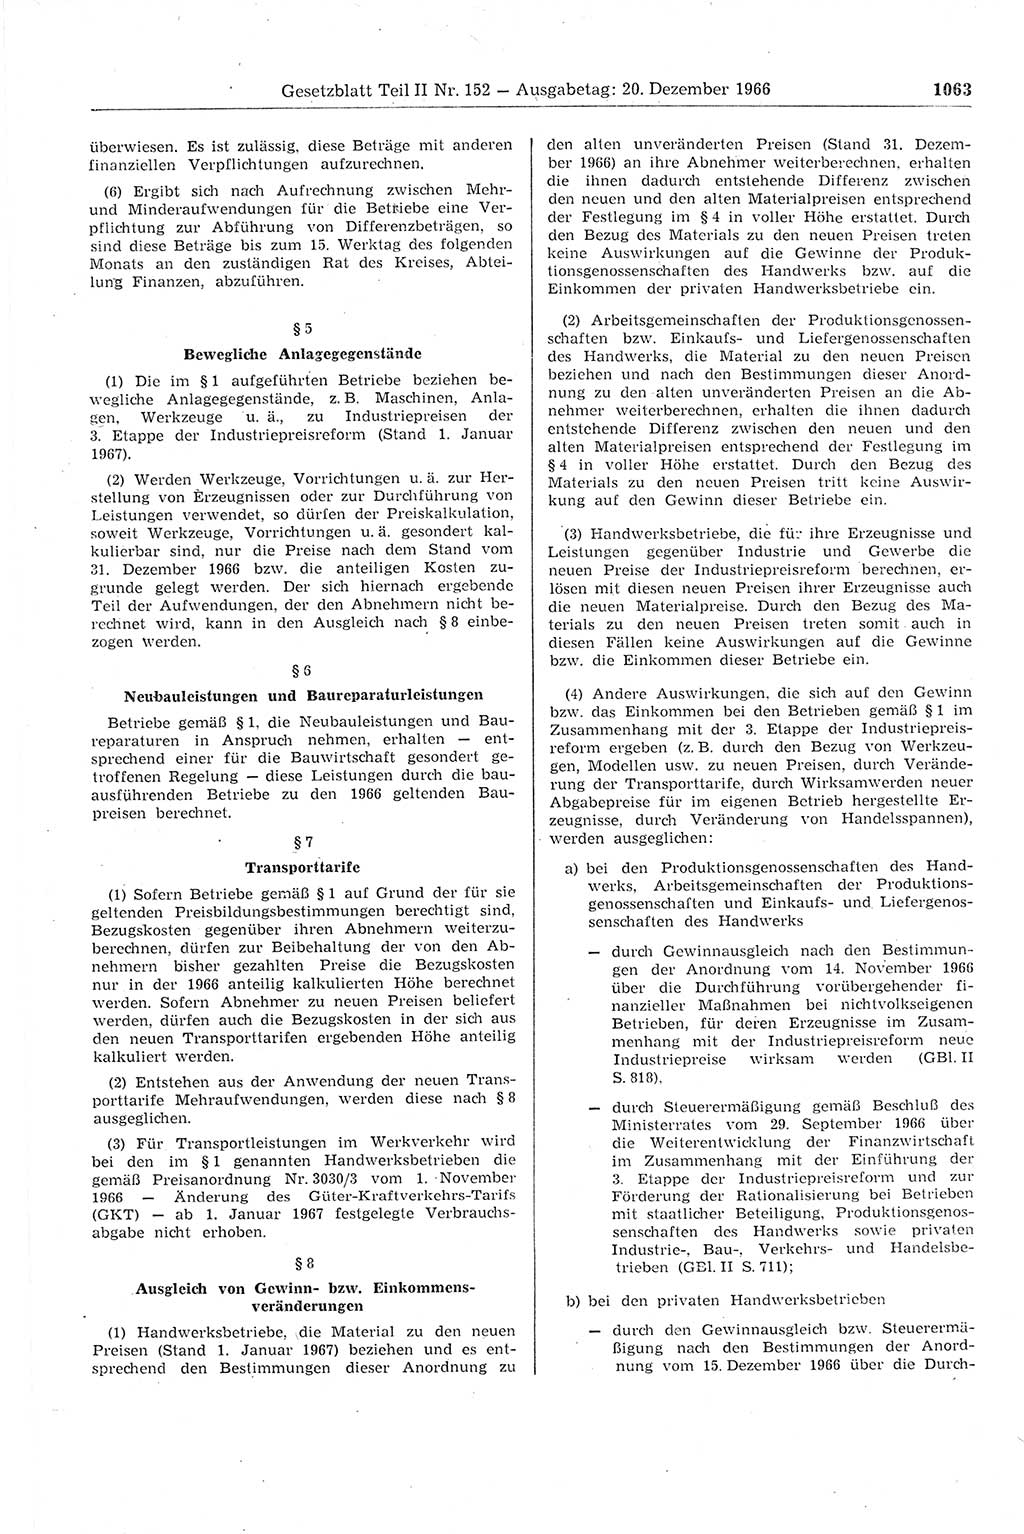 Gesetzblatt (GBl.) der Deutschen Demokratischen Republik (DDR) Teil ⅠⅠ 1966, Seite 1063 (GBl. DDR ⅠⅠ 1966, S. 1063)